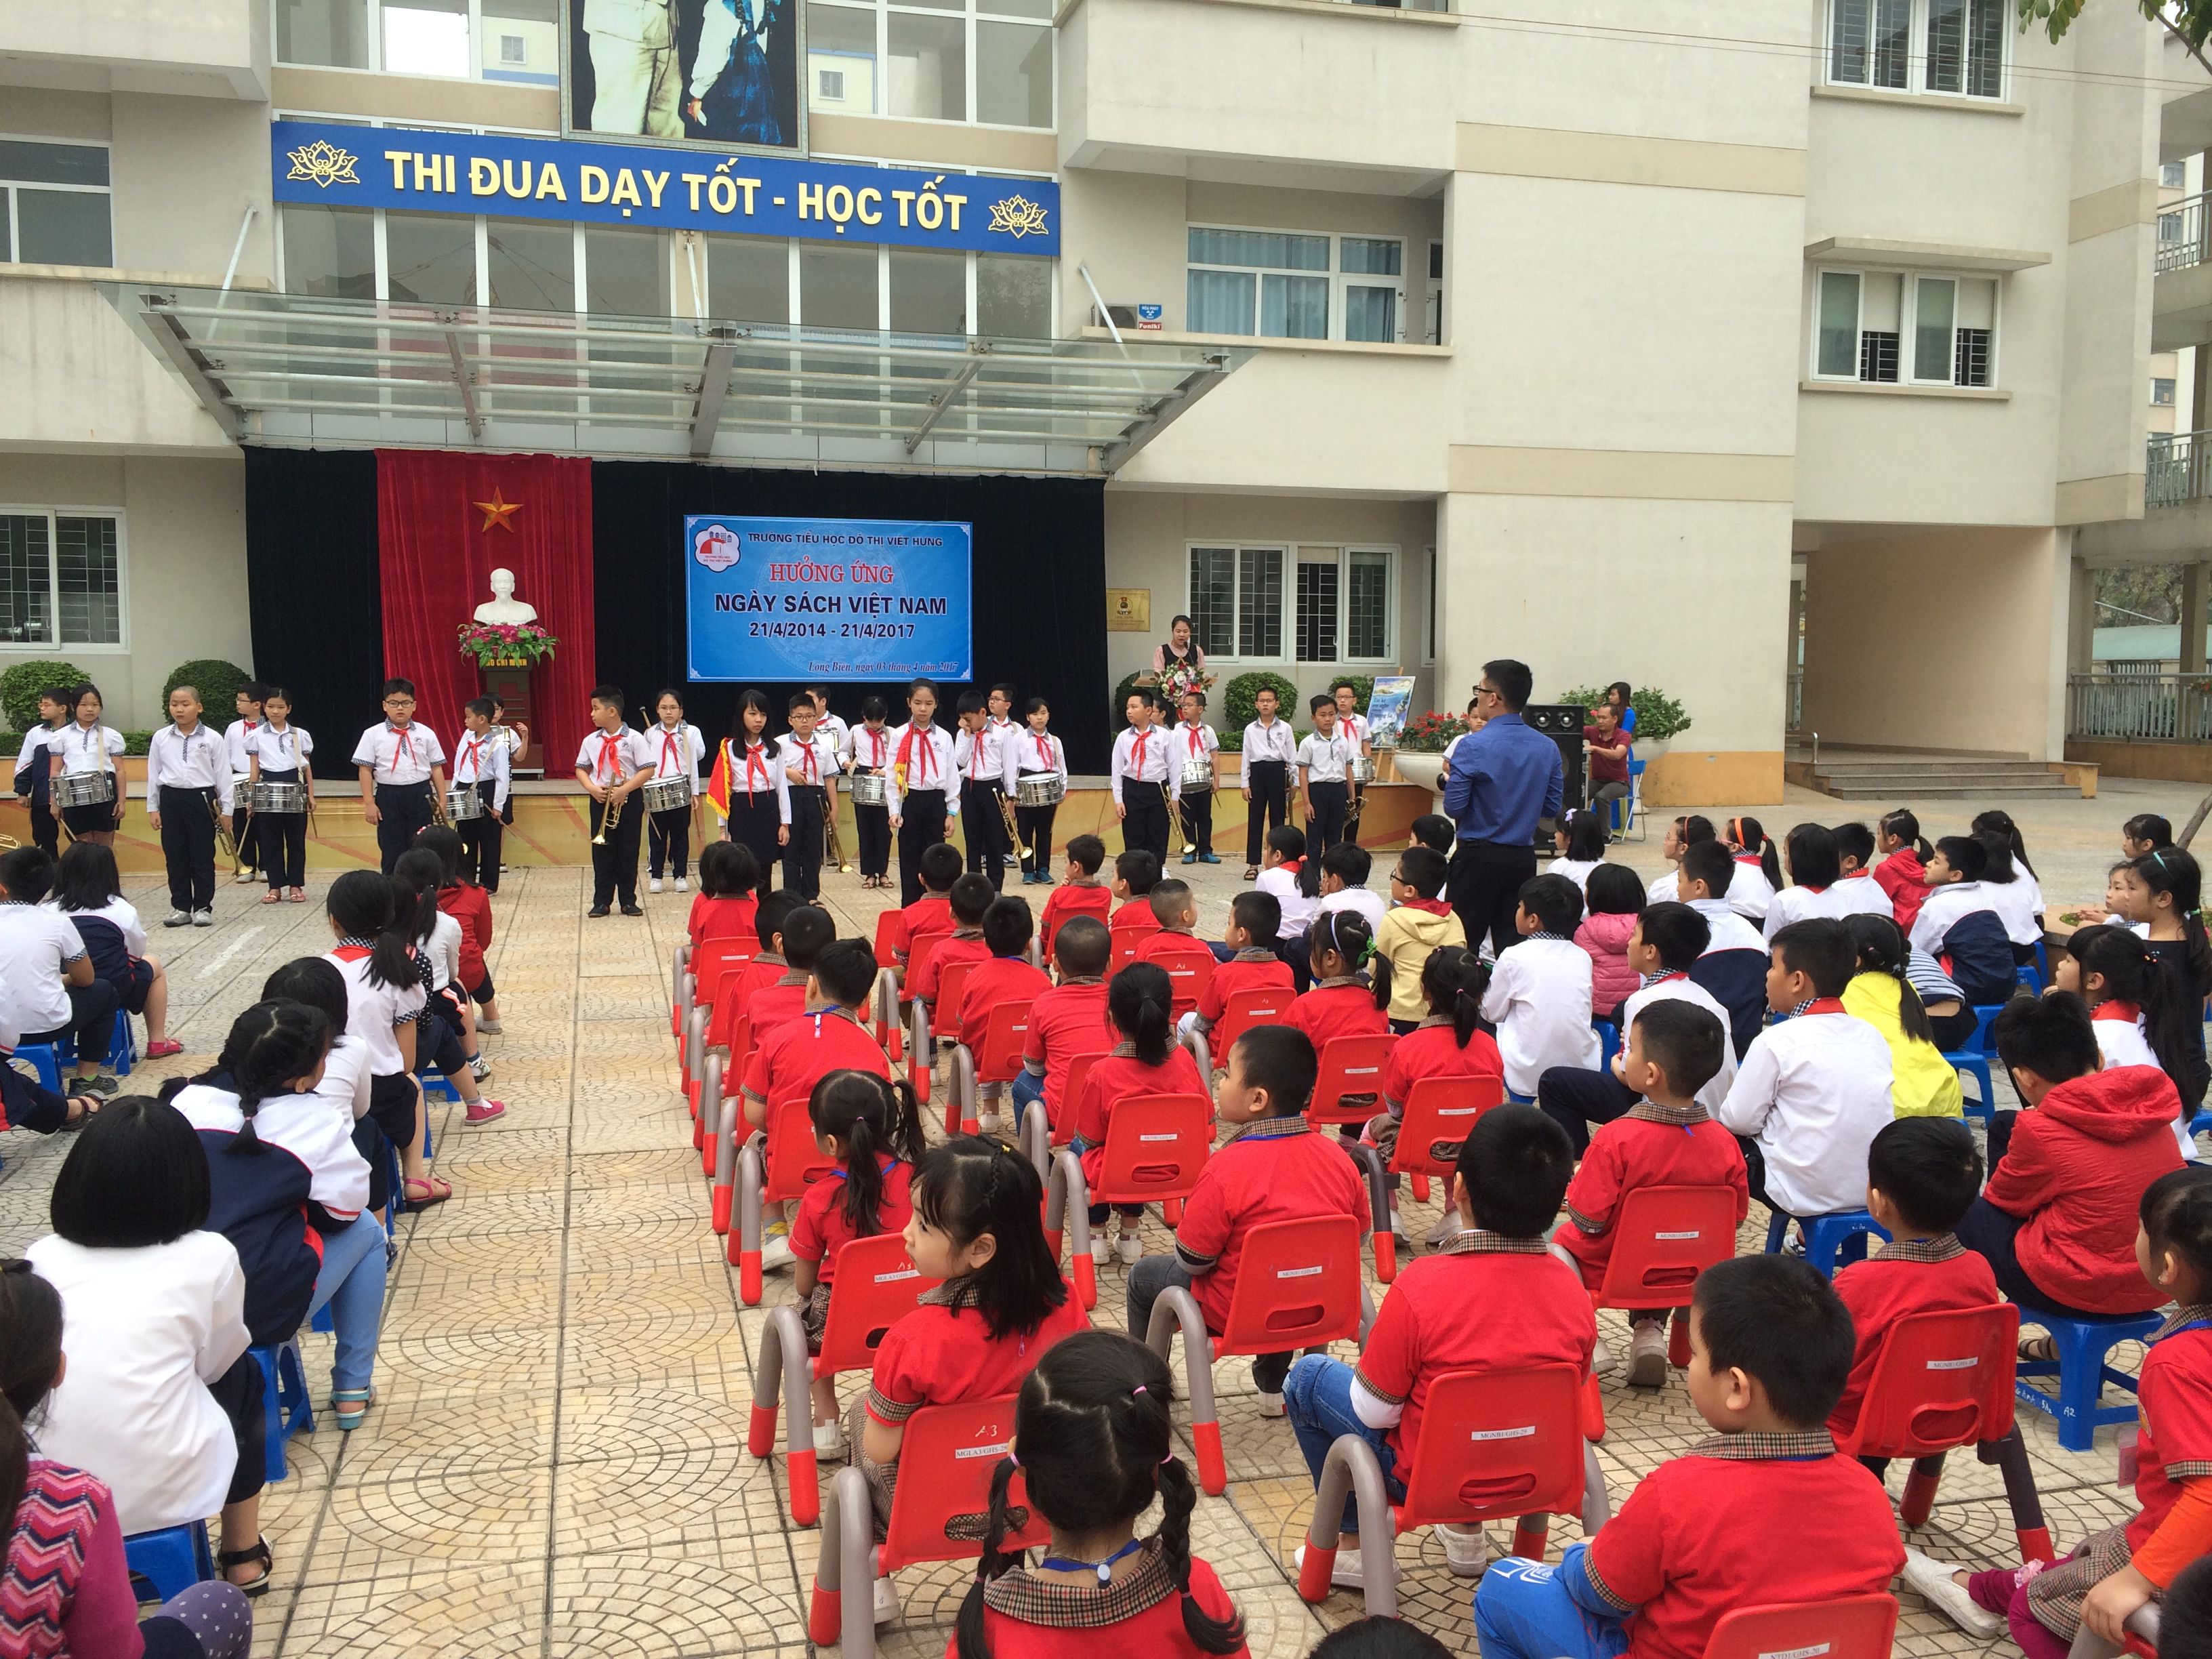 Khối mẫu giáo lớn giao lưu tại trường tiểu học Đô thị Việt hưng (24).jpg